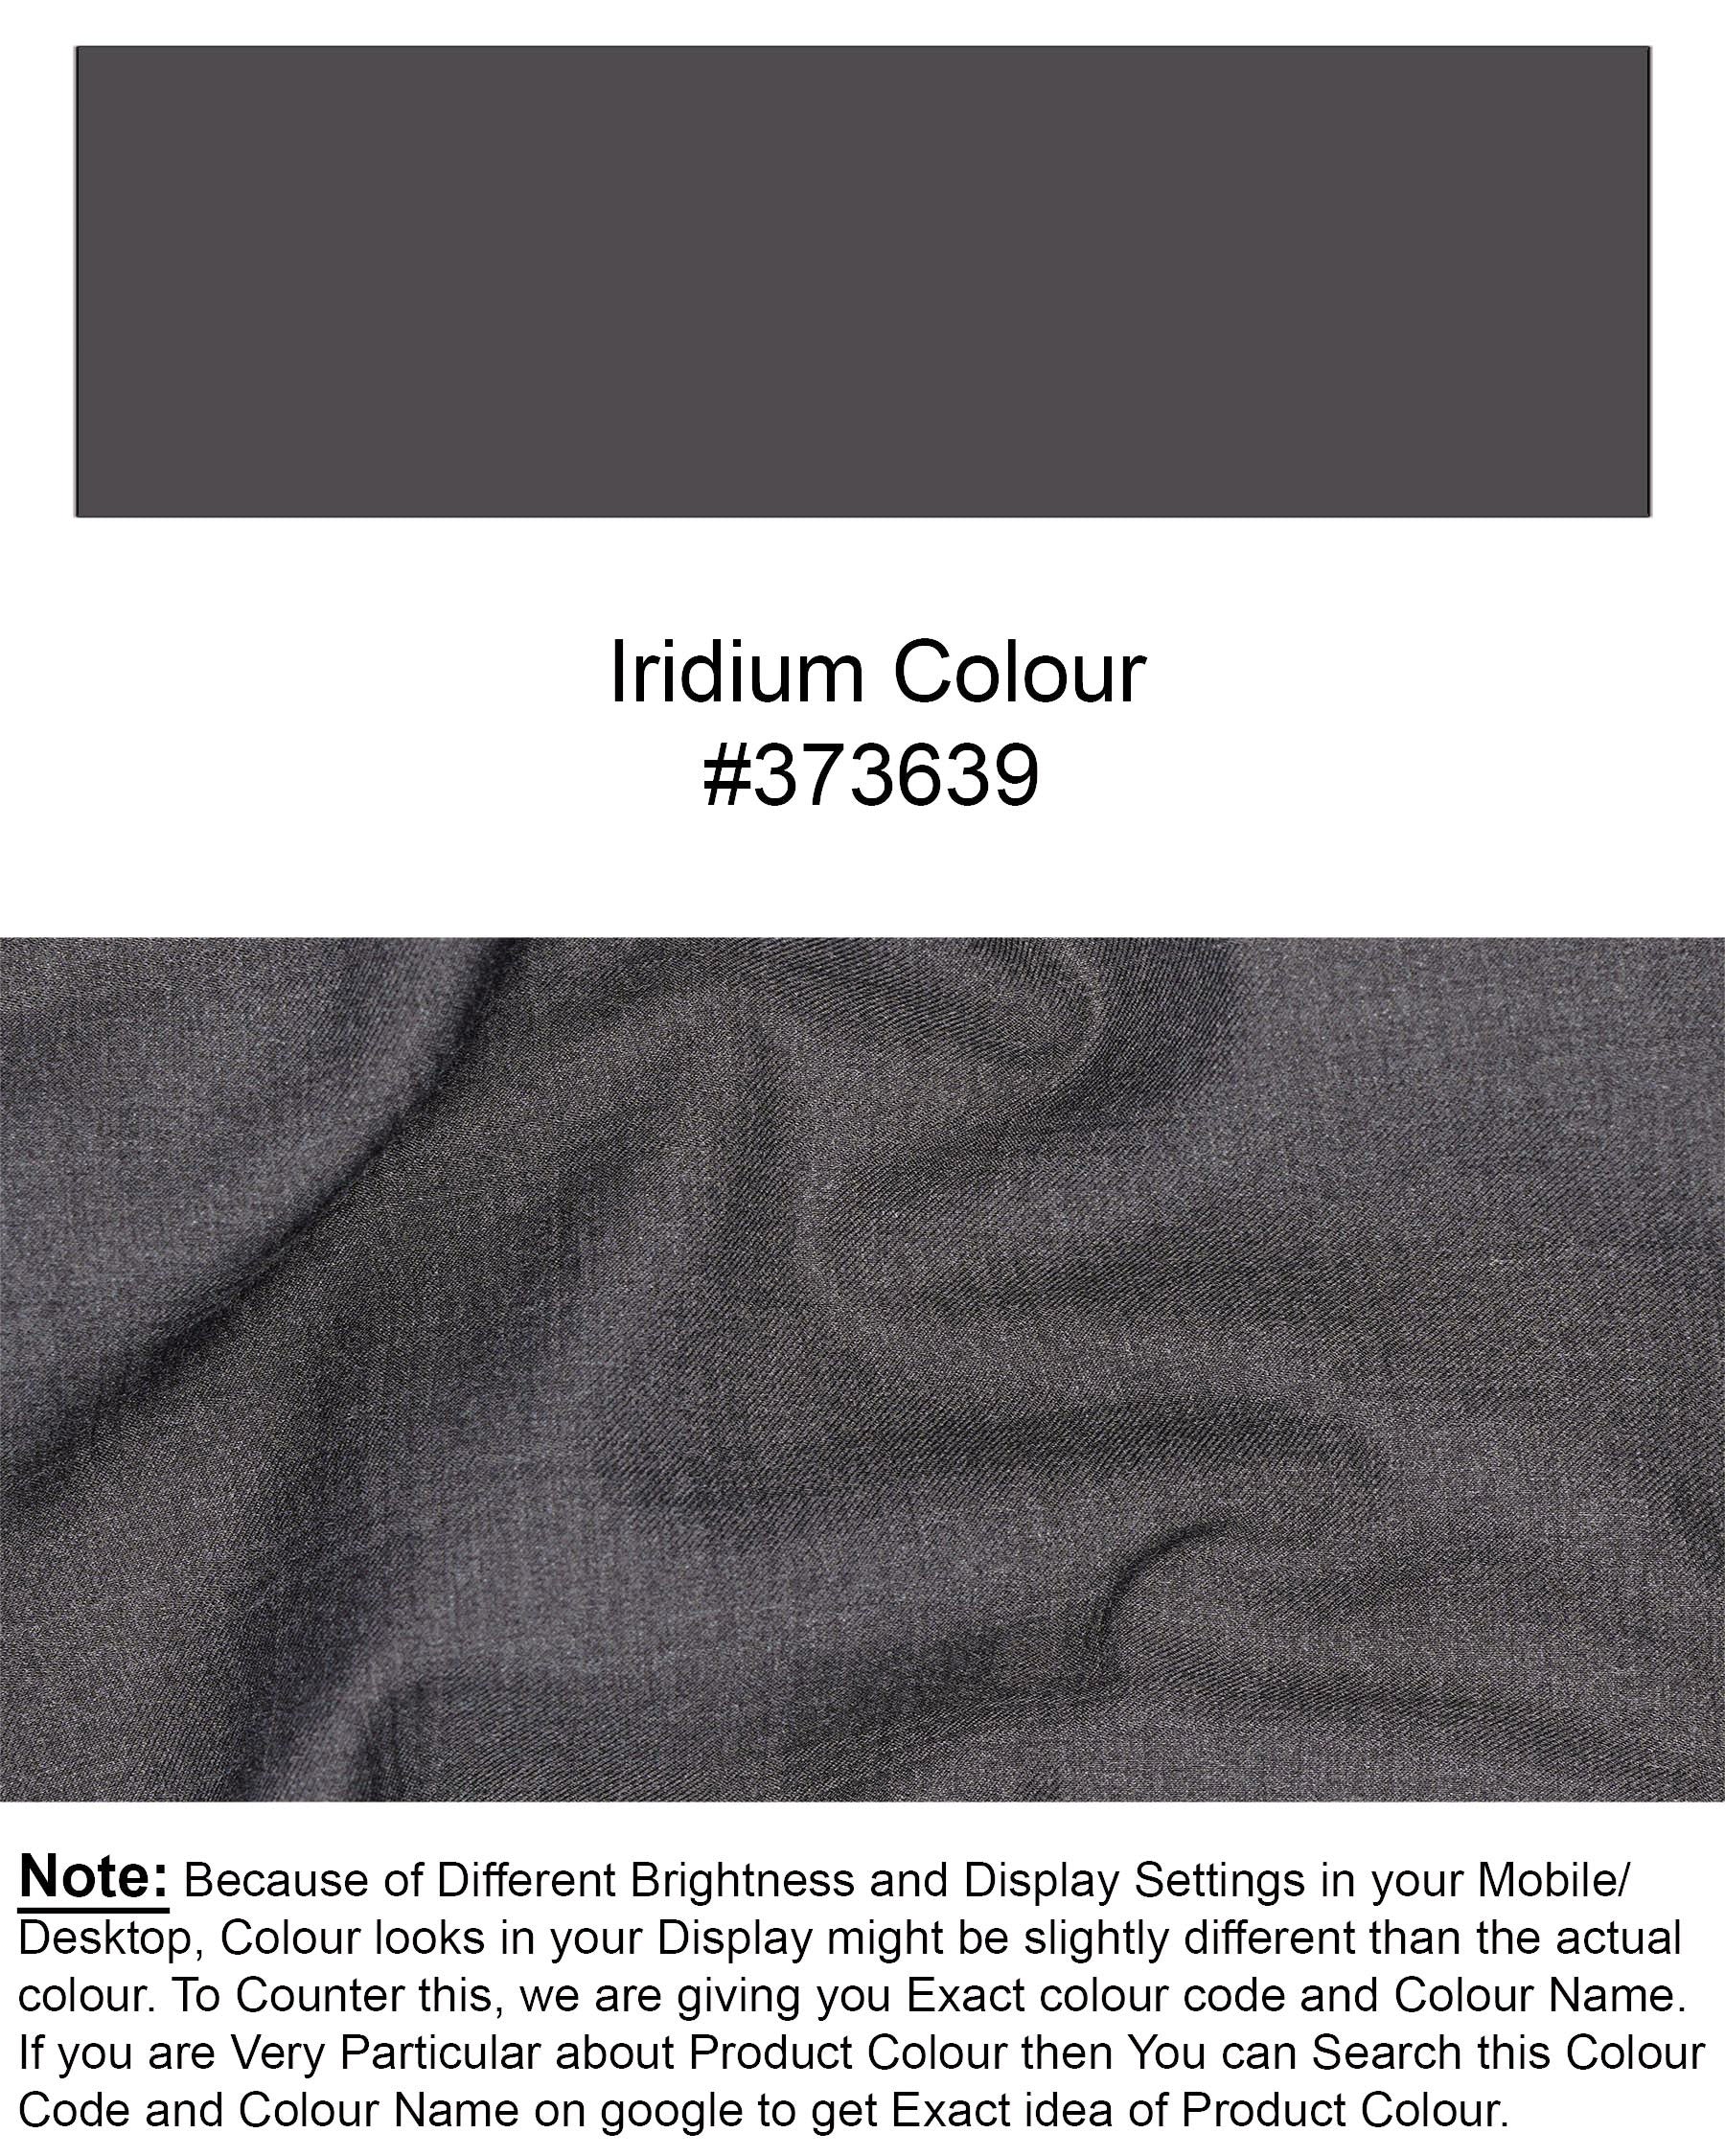 lridium grey Solid Pant T1881-28, T1881-30, T1881-32, T1881-34, T1881-36, T1881-38, T1881-40, T1881-42, T1881-44